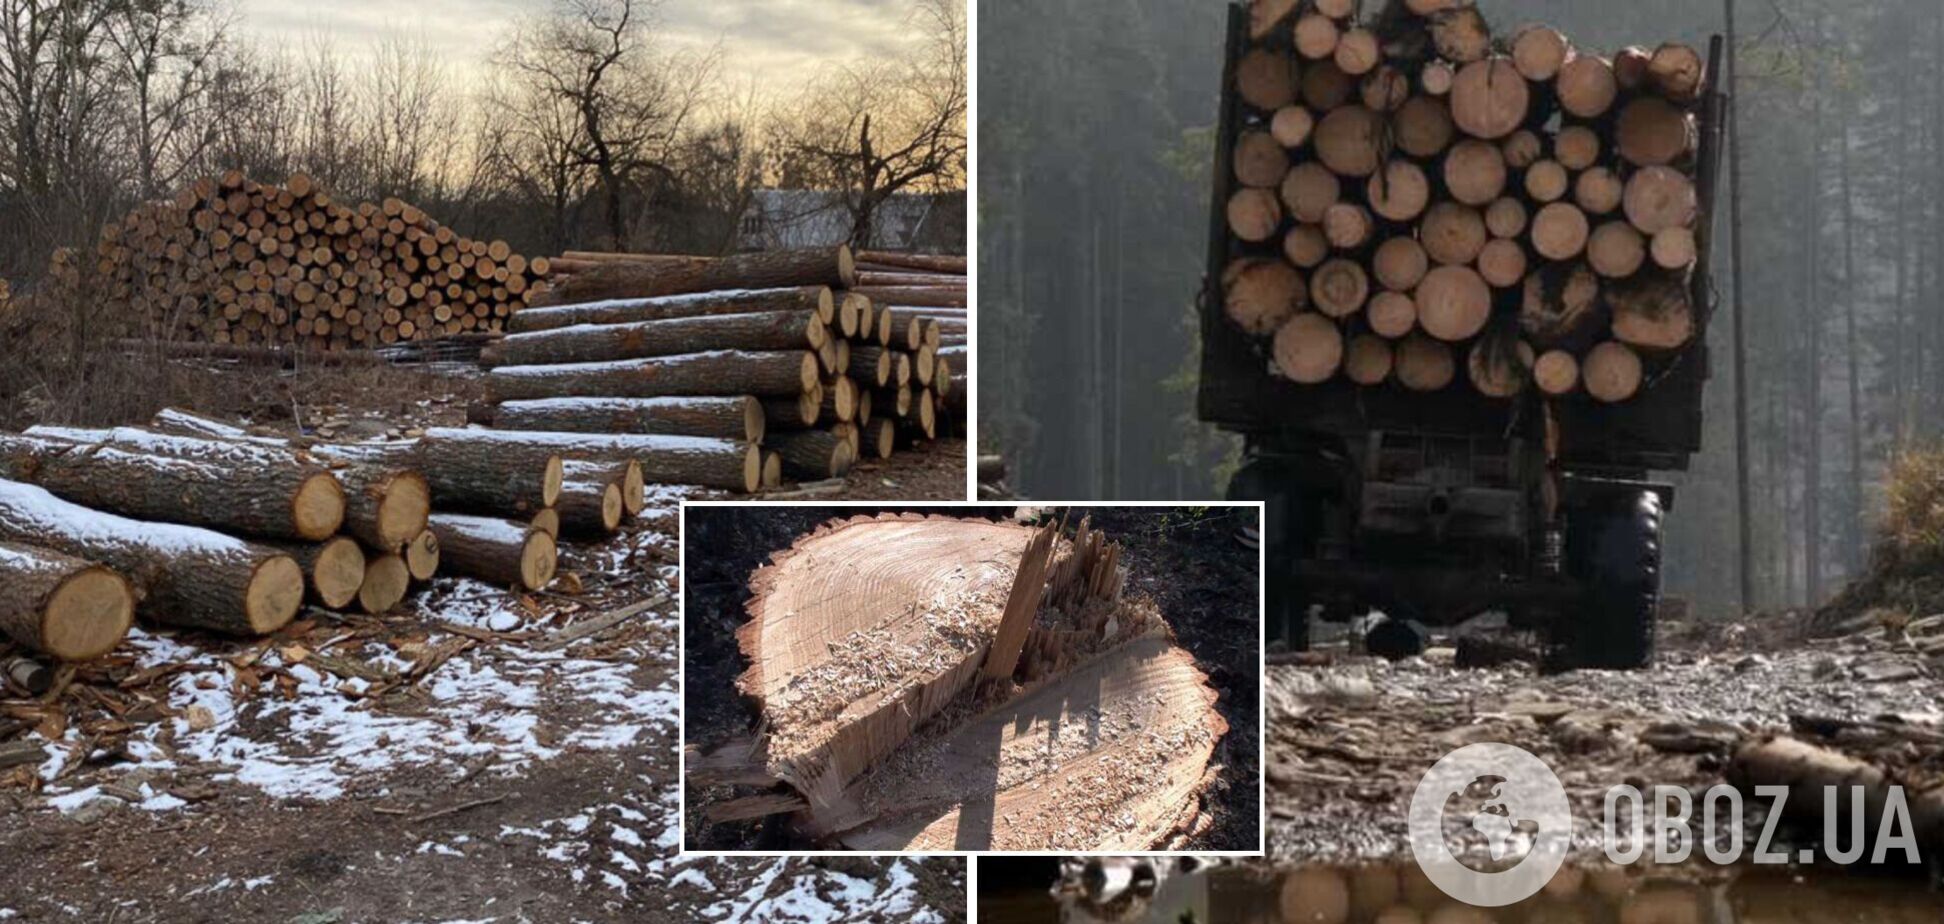 Незаконная вырубка лесов и экотерроризм остаются острой проблемой в Украине